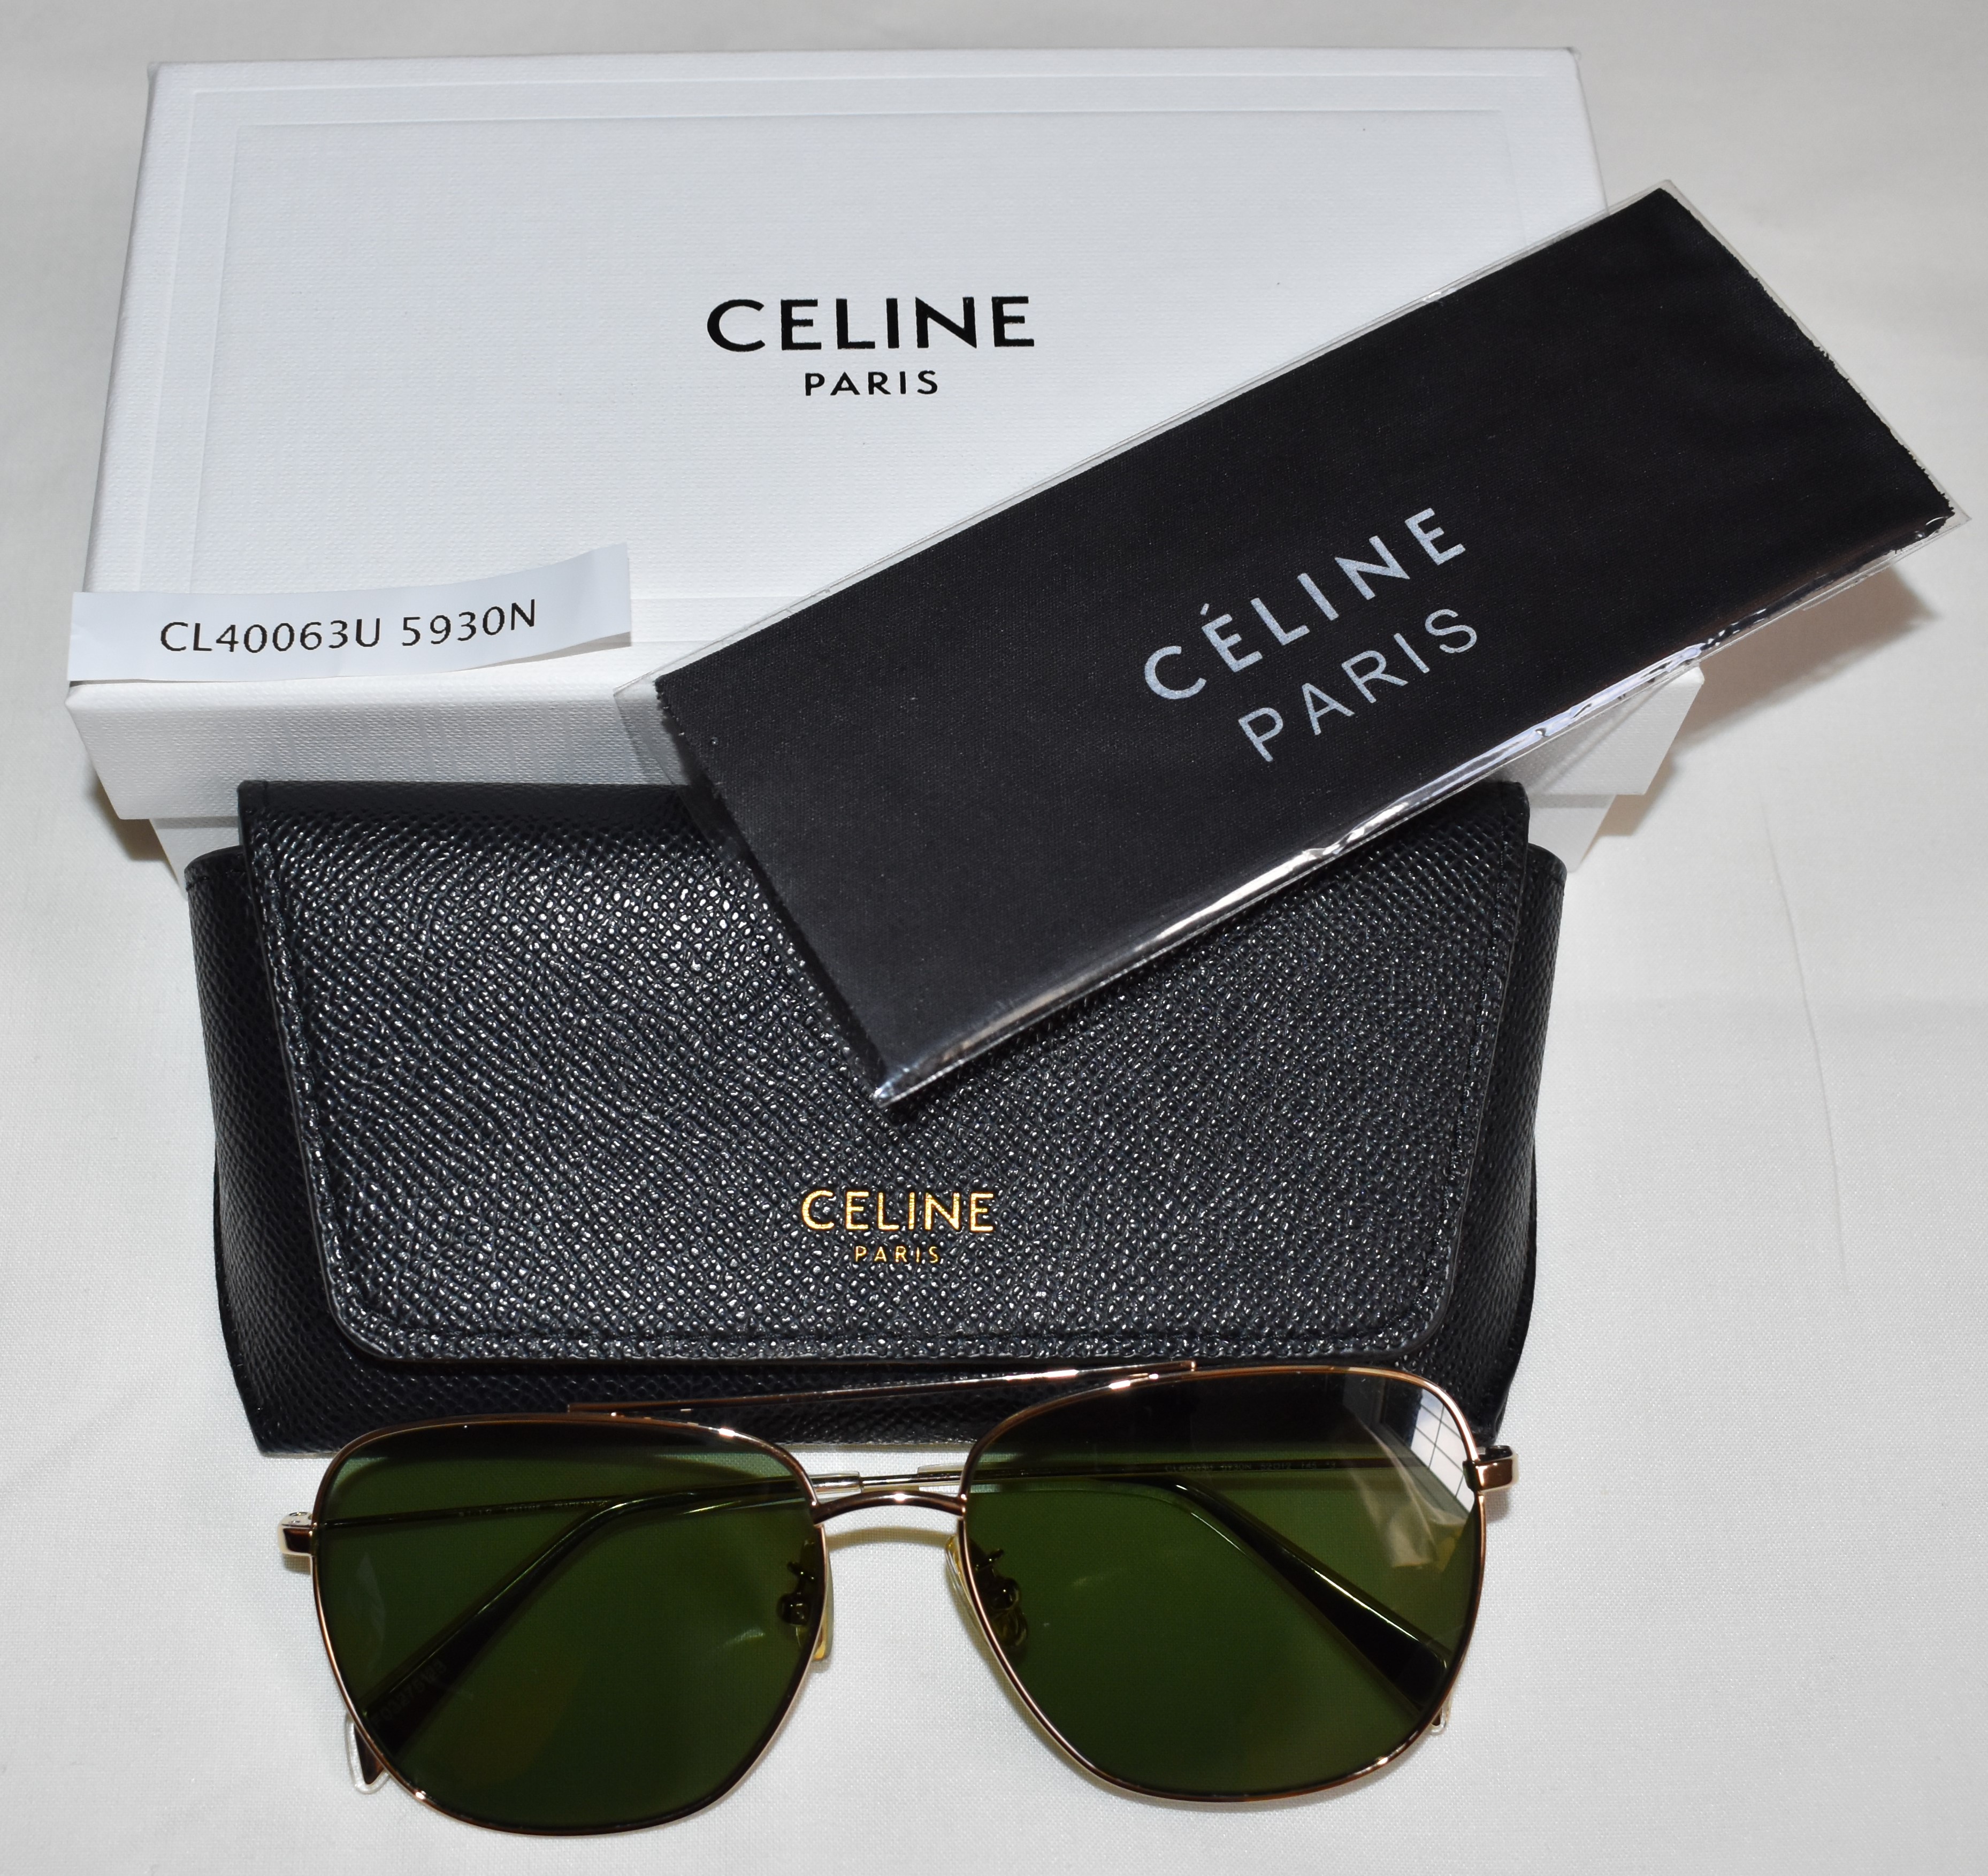 Celine CL40063U 5930N Sunglasses - Image 3 of 3